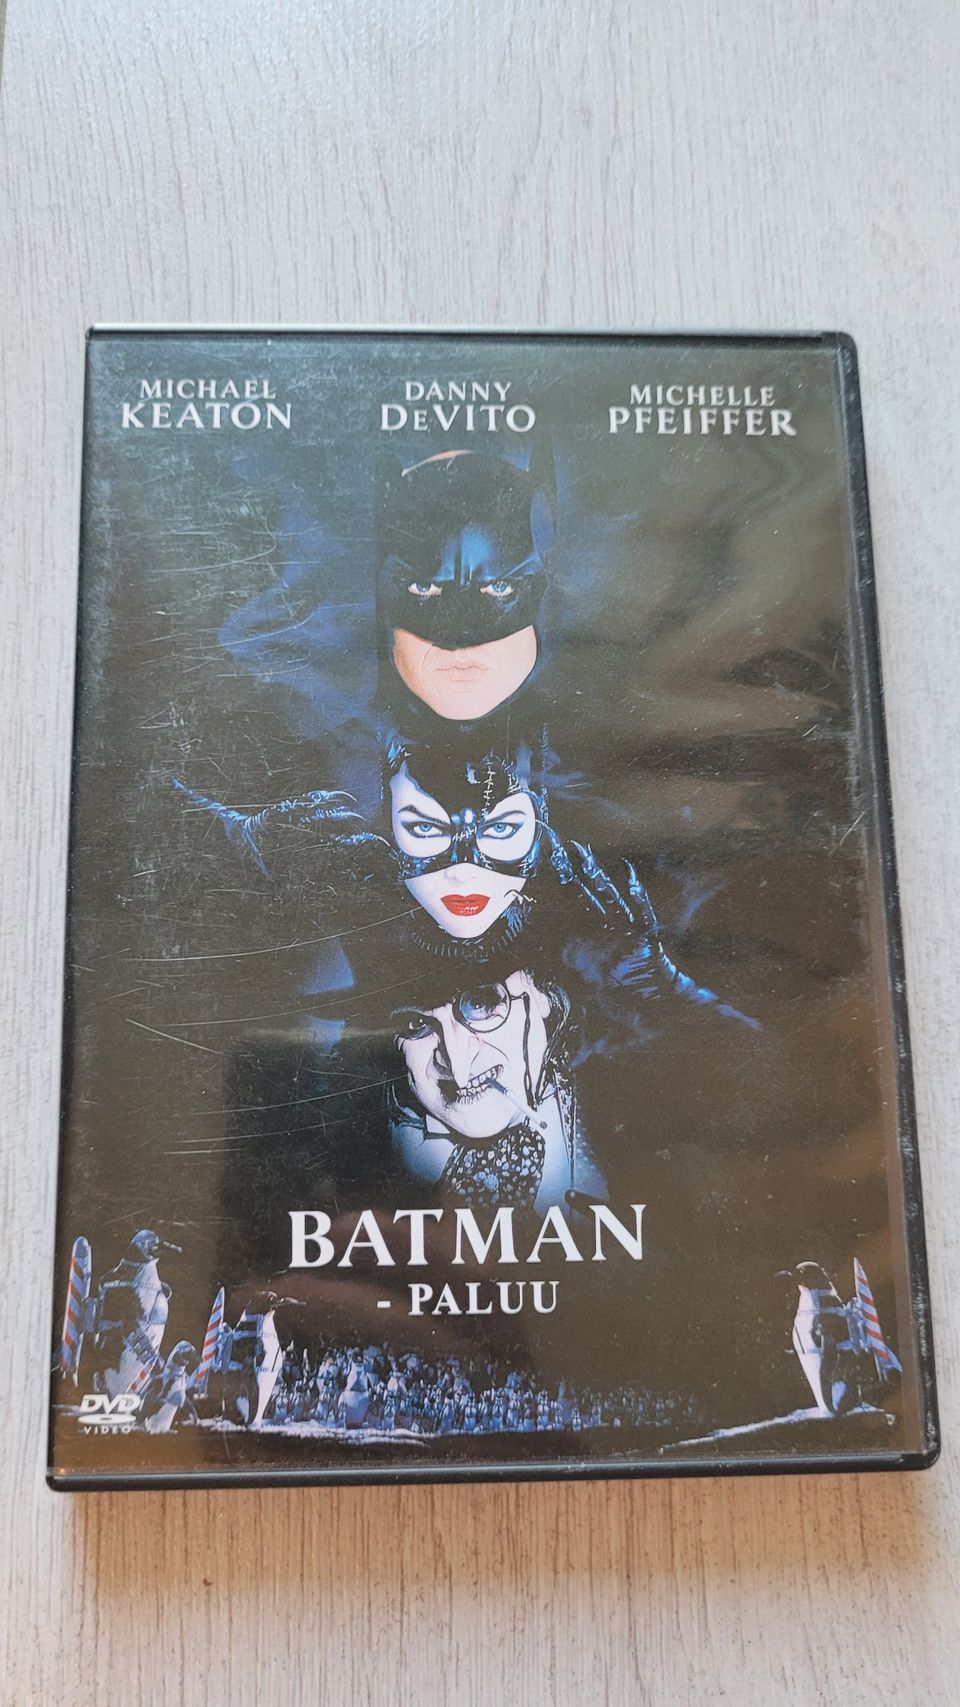 Batman - paluu DVD